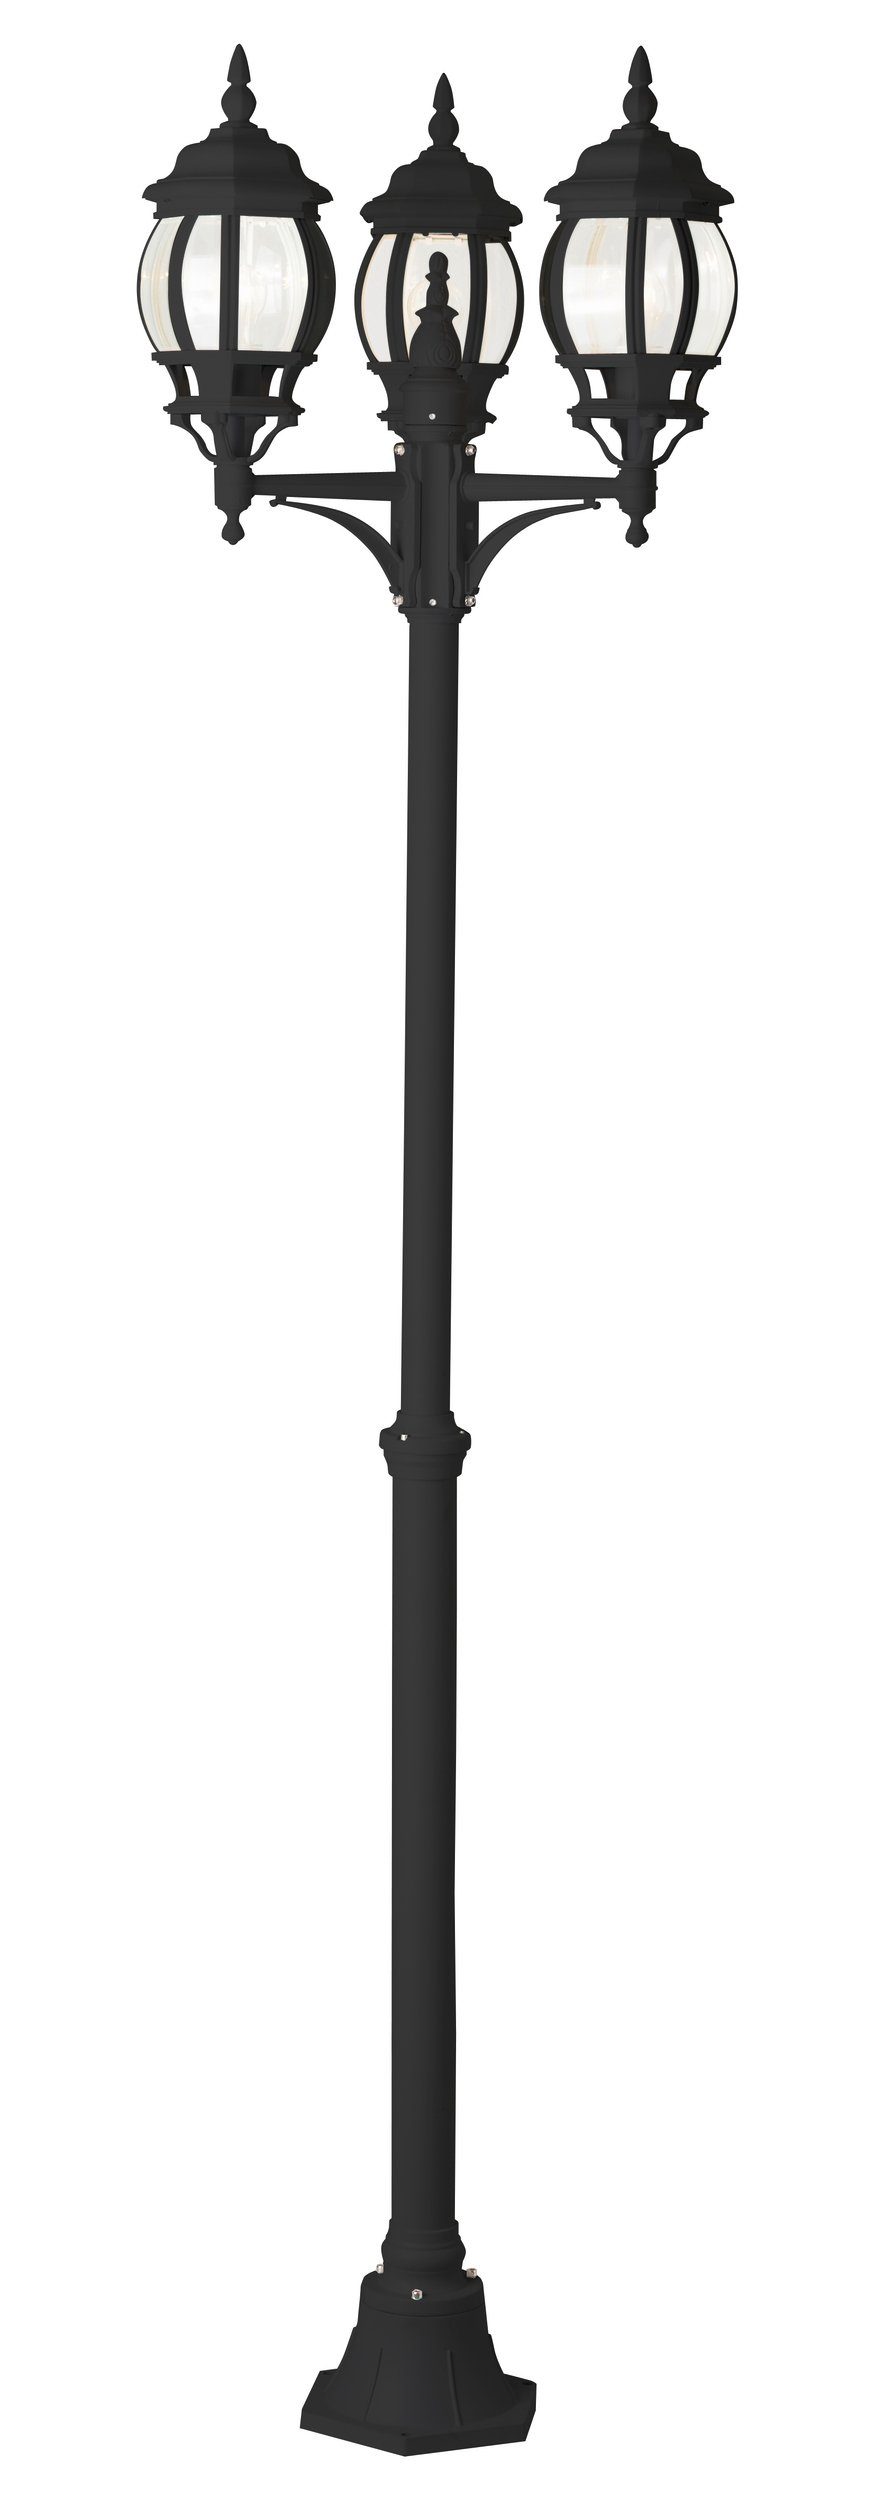 Lightbox Außen-Stehlampe, ohne Leuchtmittel, Kandelaber, 2,4 m Höhe, Ø 52 cm, 3 x E27, max. 60 W, IP23, schwarz